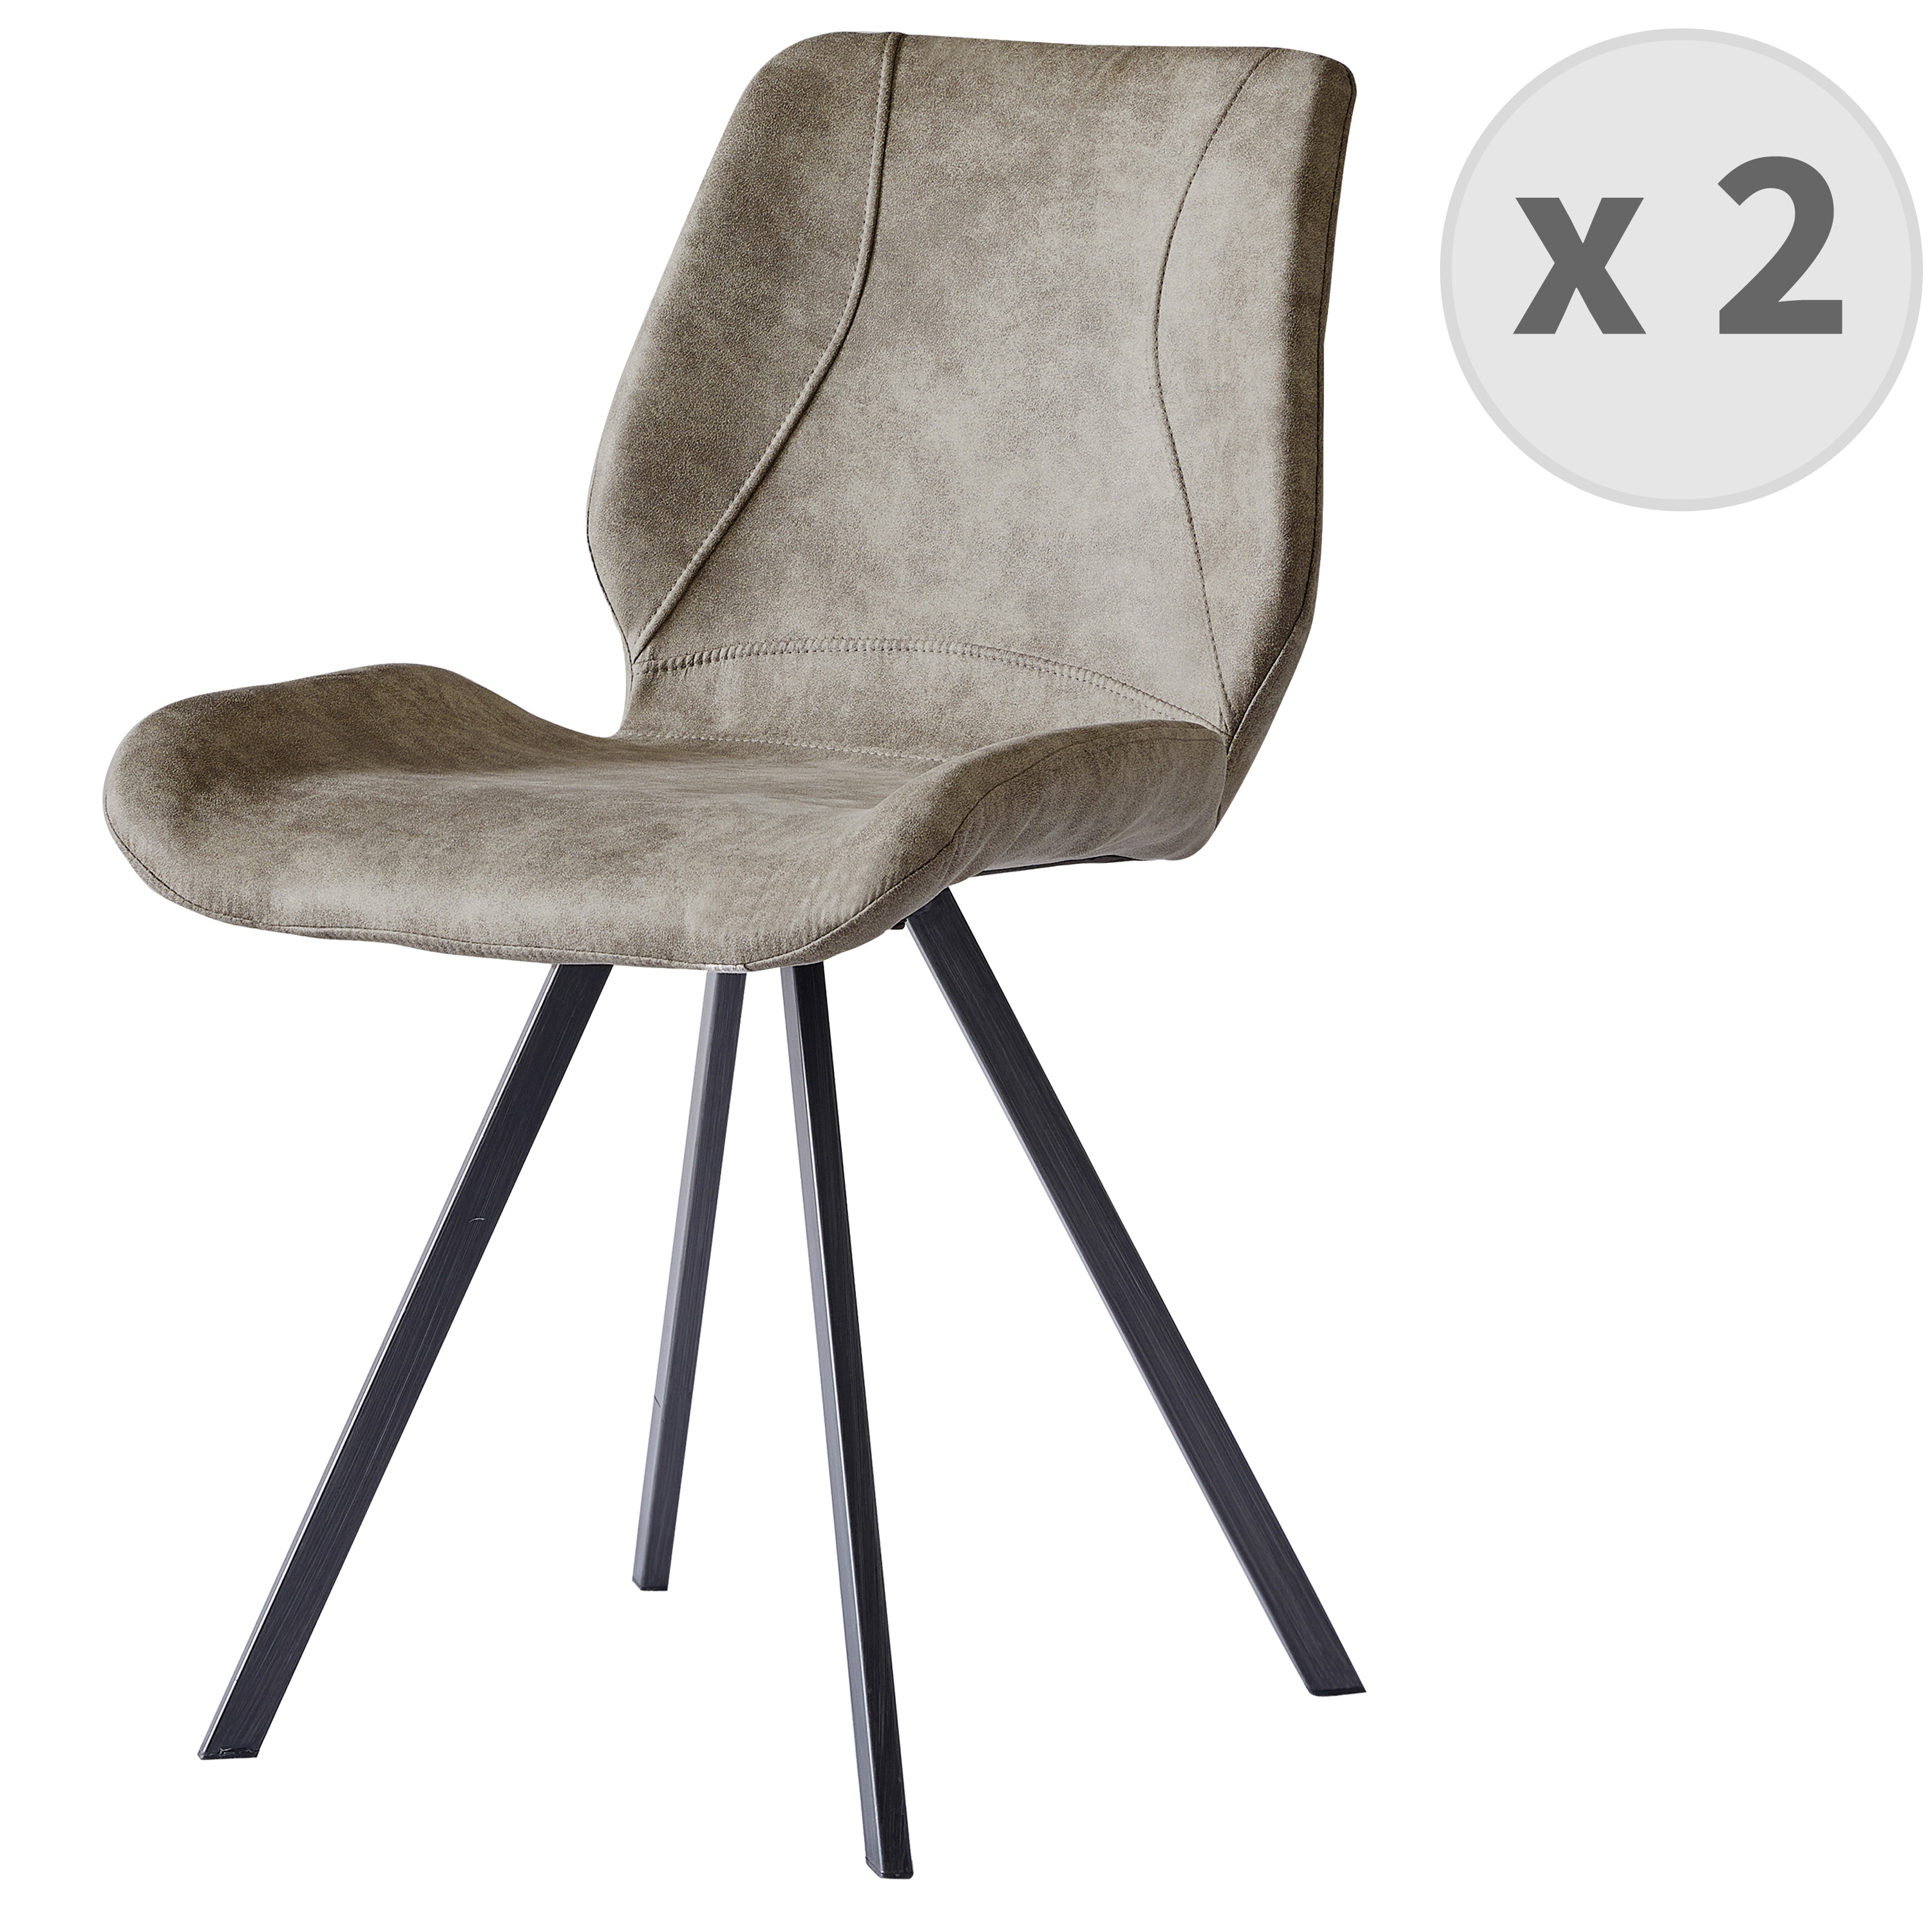 Chaise industrielle micro vintage marron clair et noir brossé (x2)